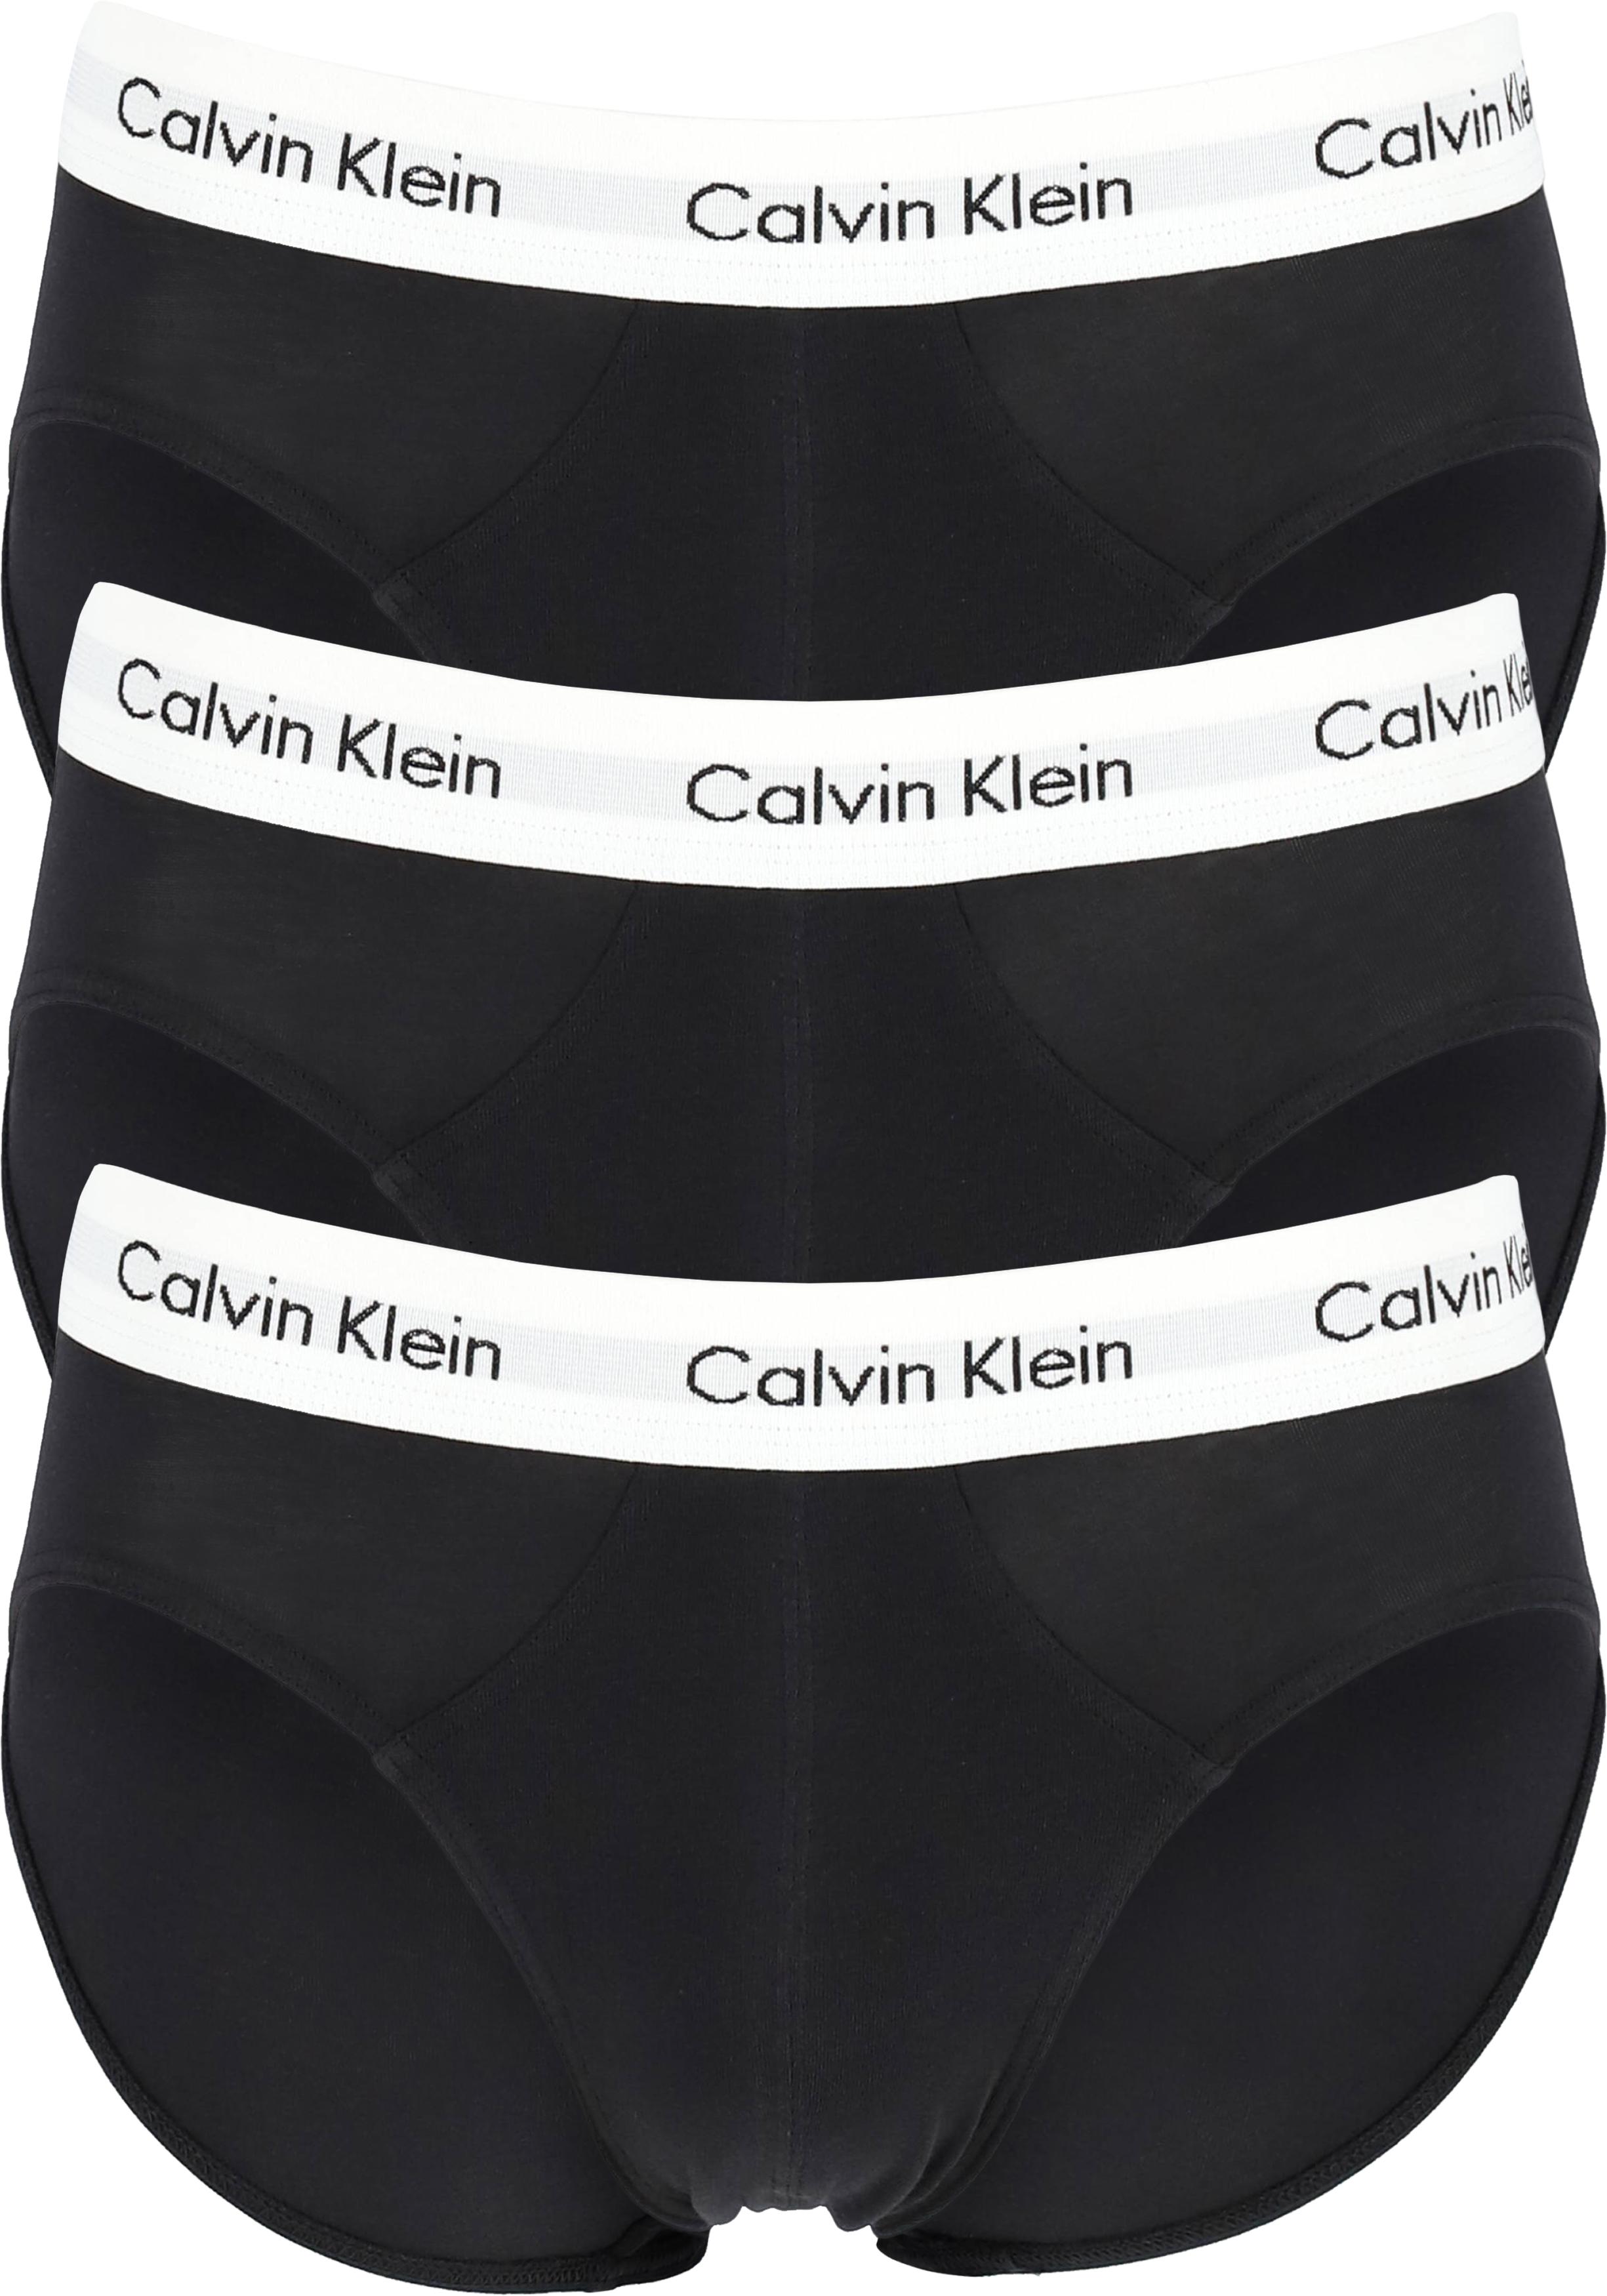 biologie betreuren Nieuwheid Calvin Klein hipster brief (3-pack), heren slips, zwart met witte band -  Shop de nieuwste voorjaarsmode